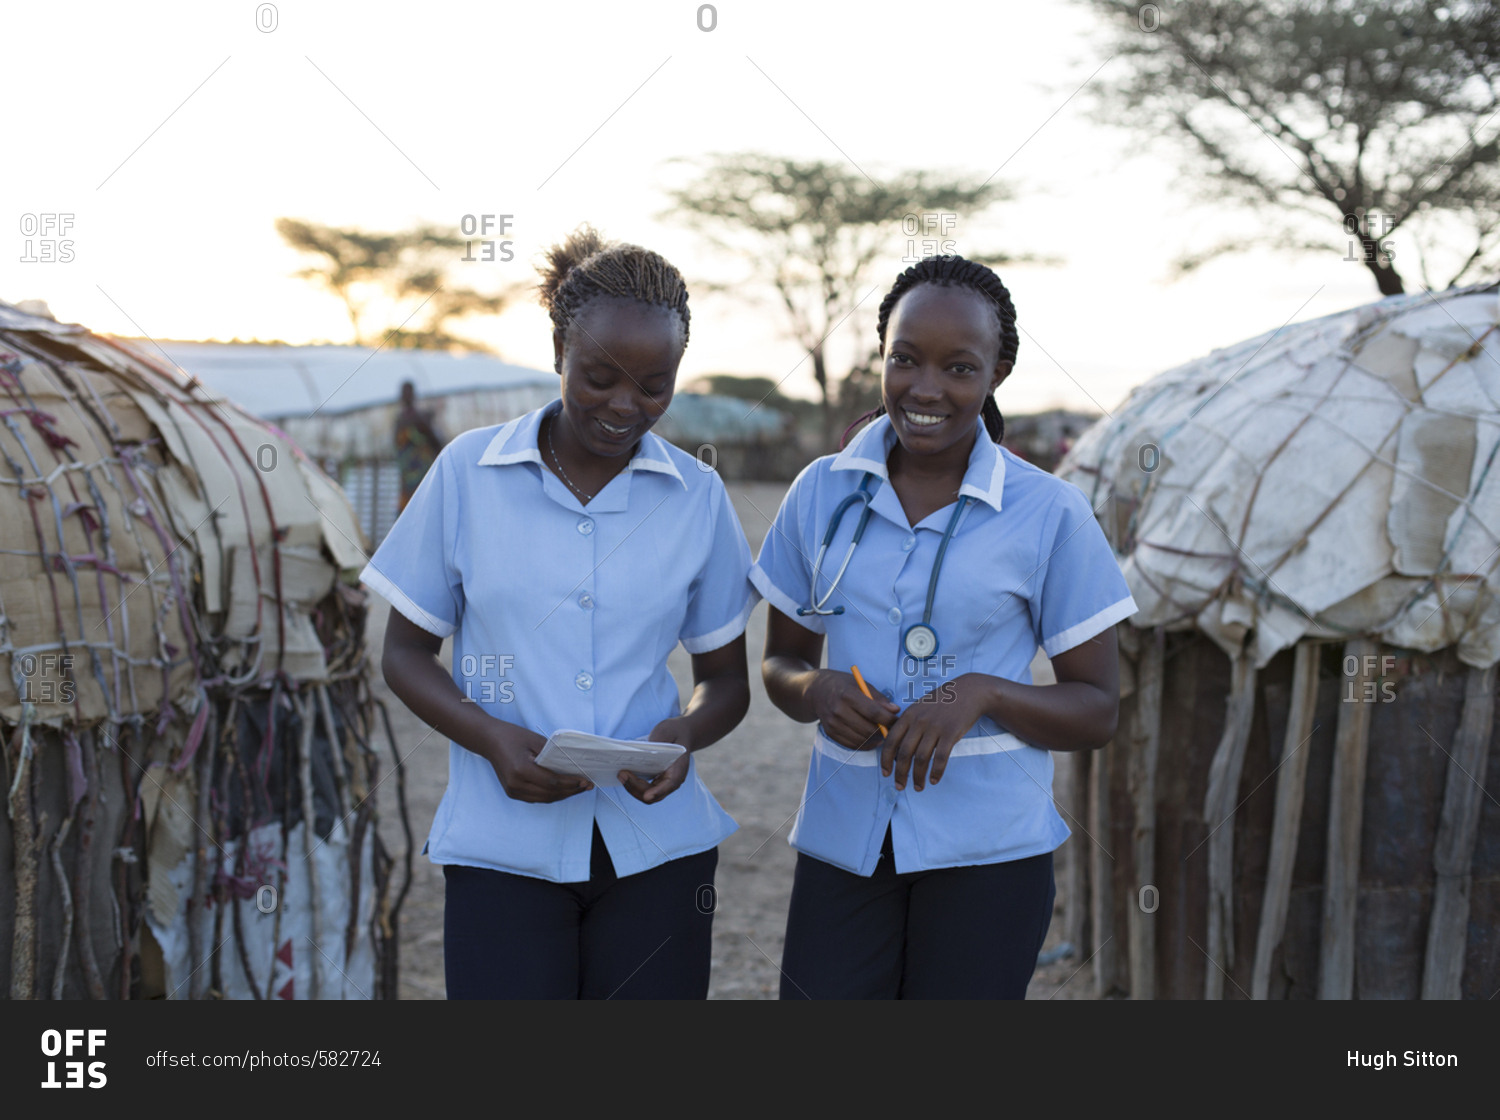 Two nurses working on location in rural village in Kenya, Africa